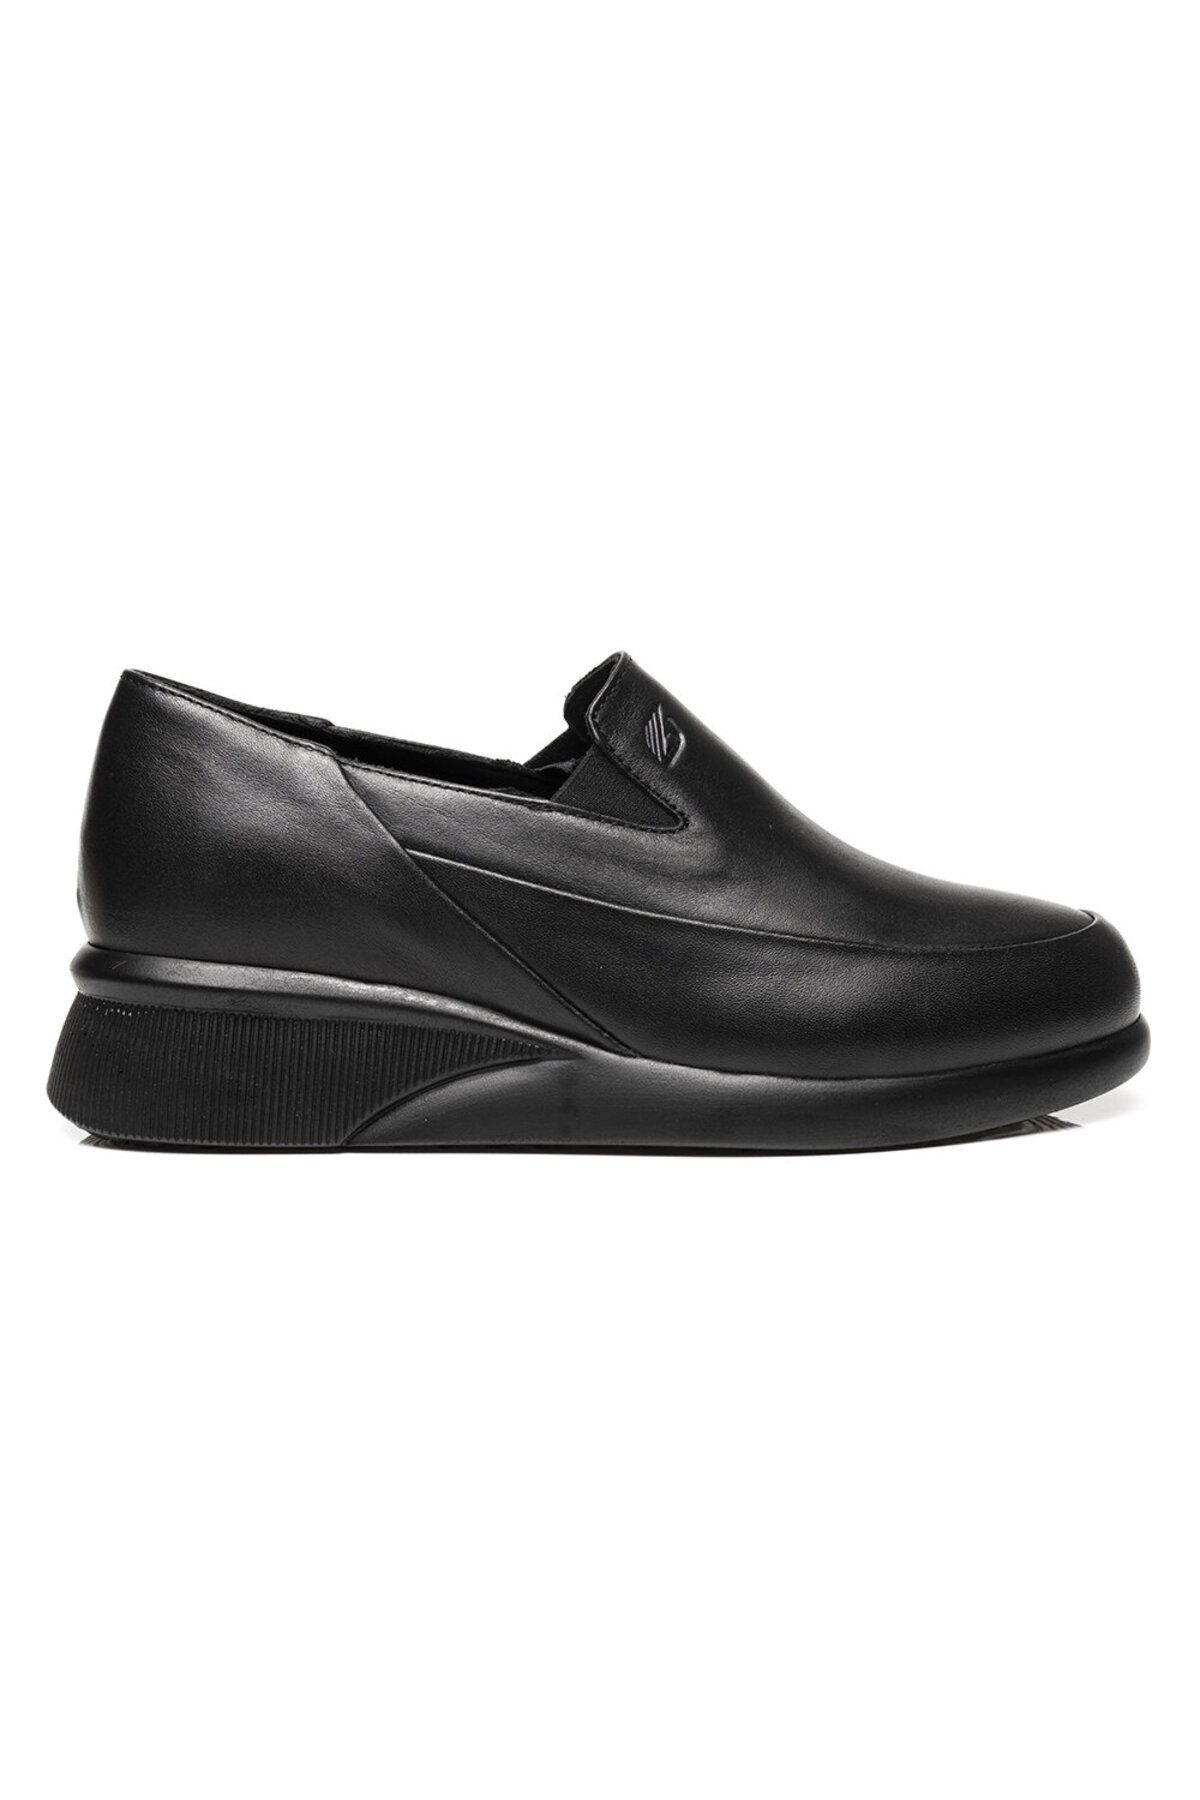 Greyder Kadın Siyah Hakiki Deri Comfort Ayakkabı 3k2ua33350